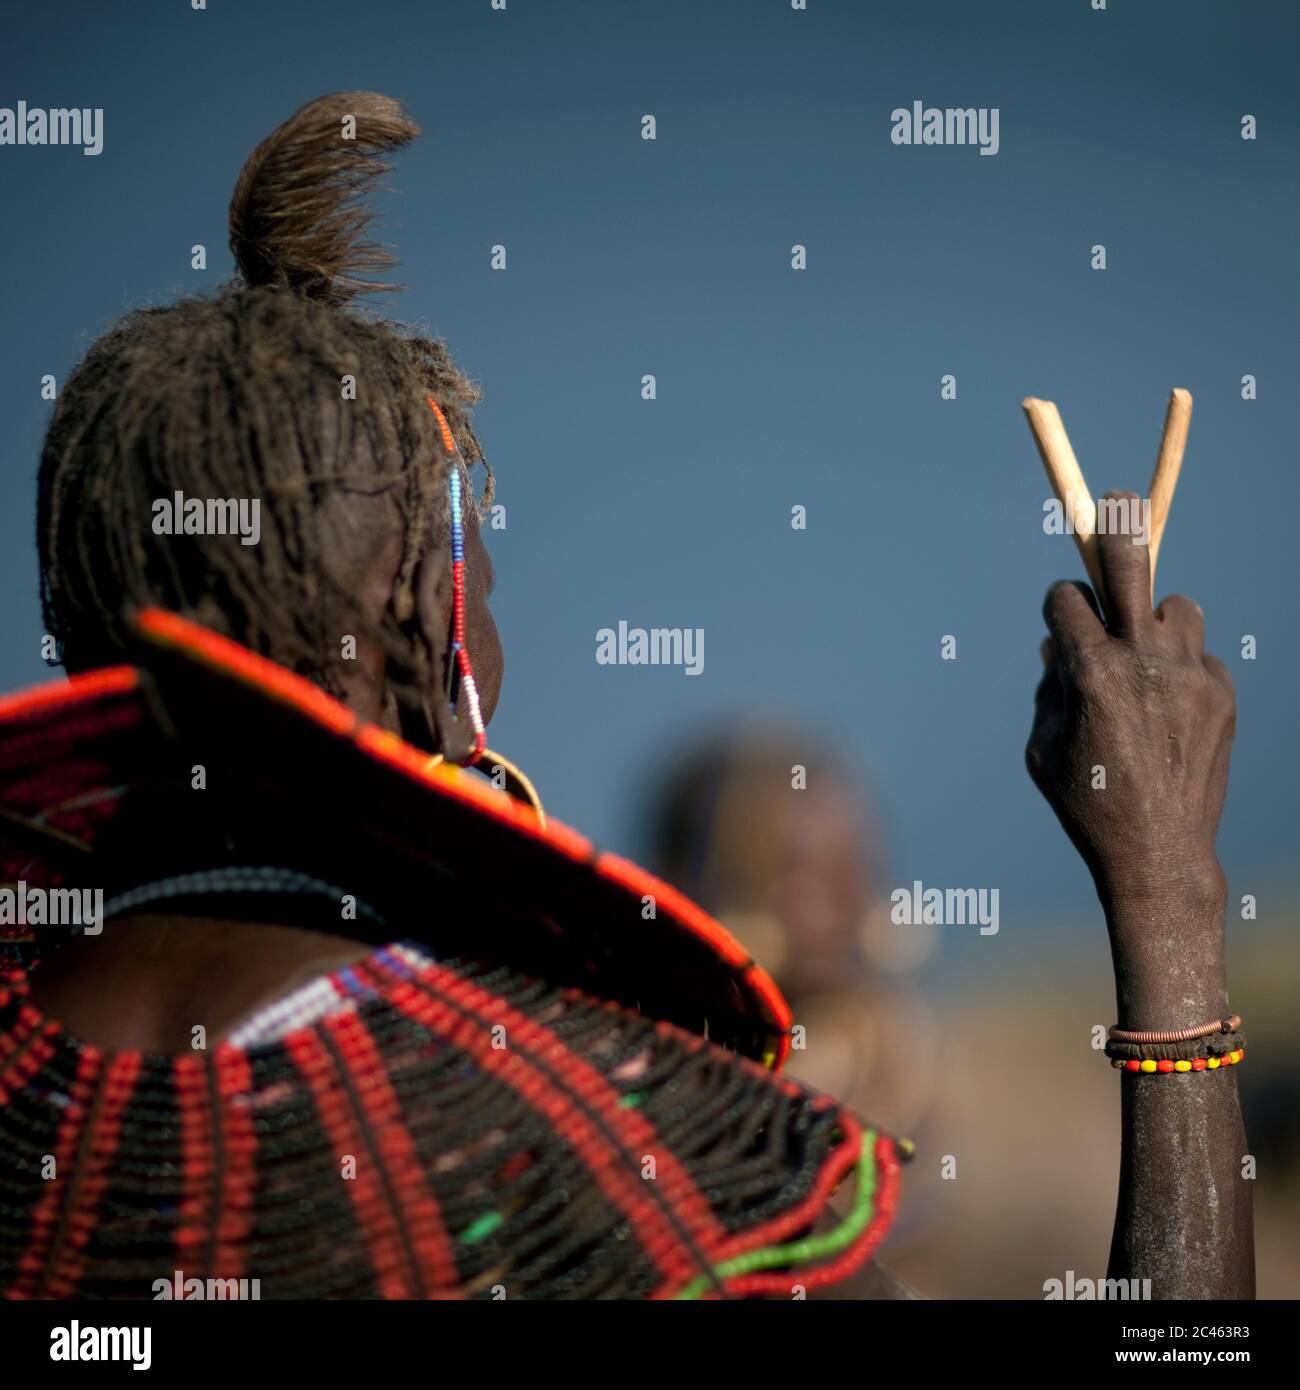 African Beaded Jewellery Symbolism. Kenya Tribes - SHIKHAZURI